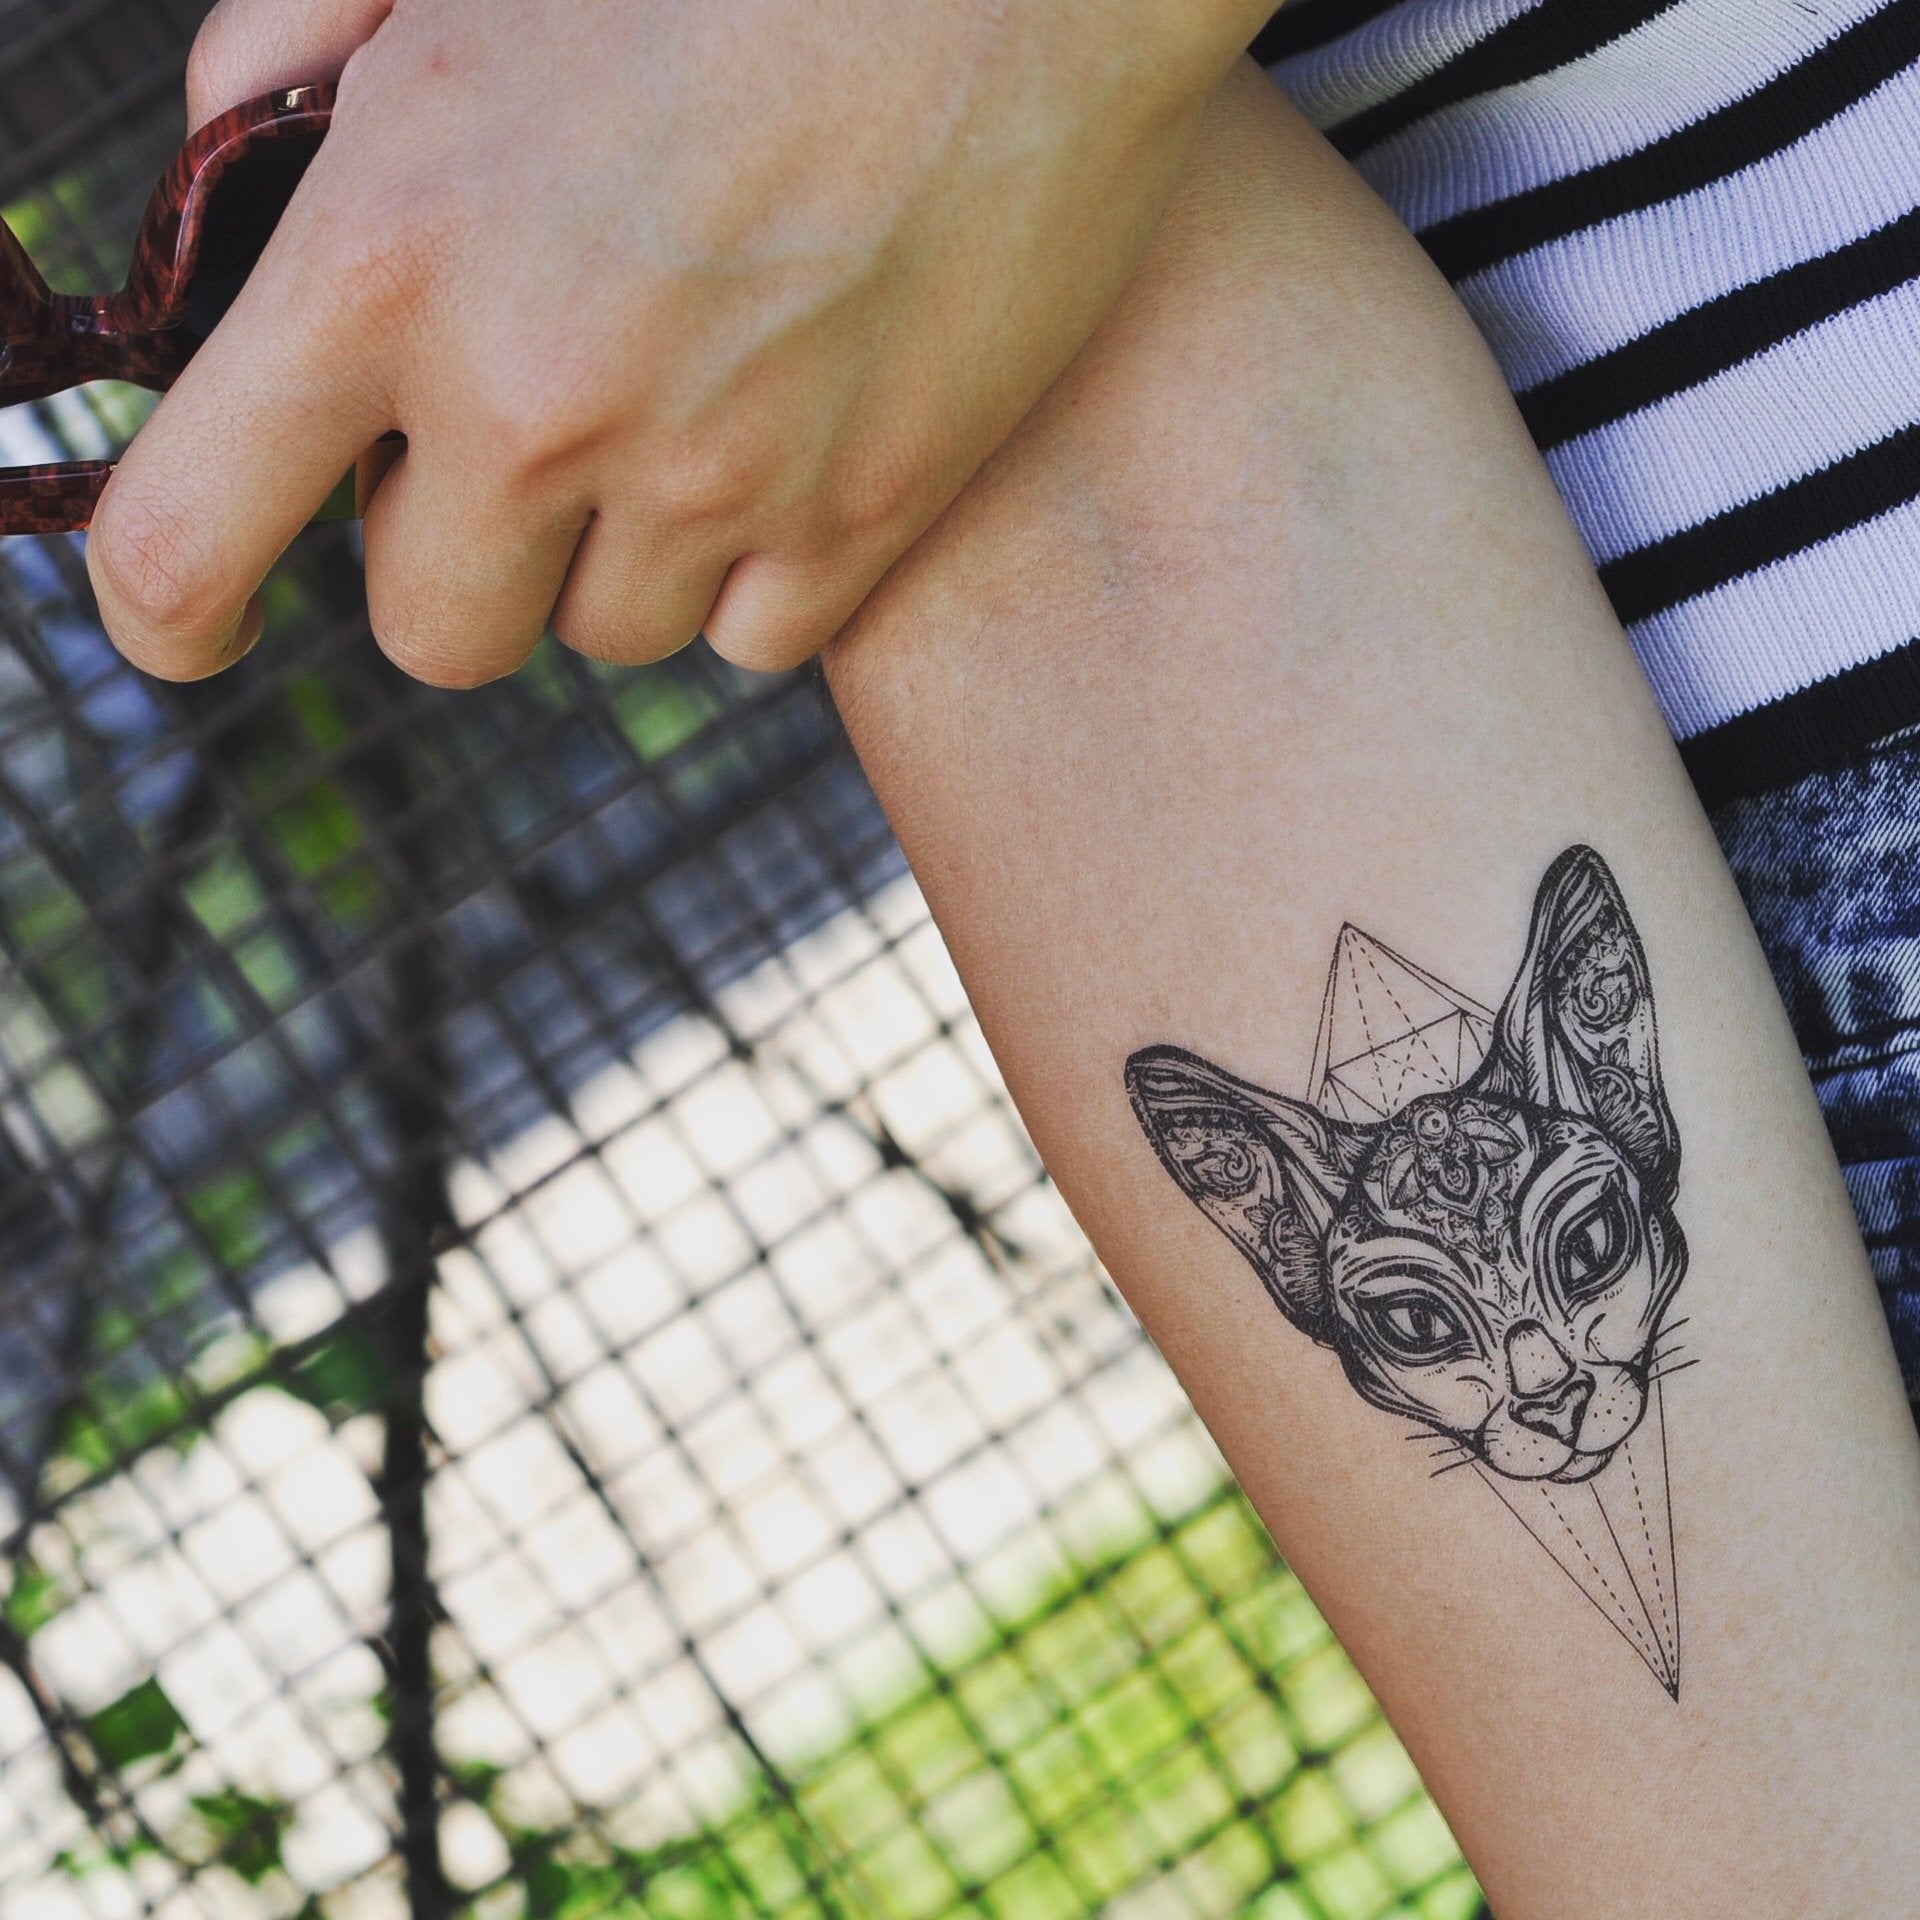 fake medium sphinx sphynx cat face animal temporary tattoo sticker design idea on inner arm